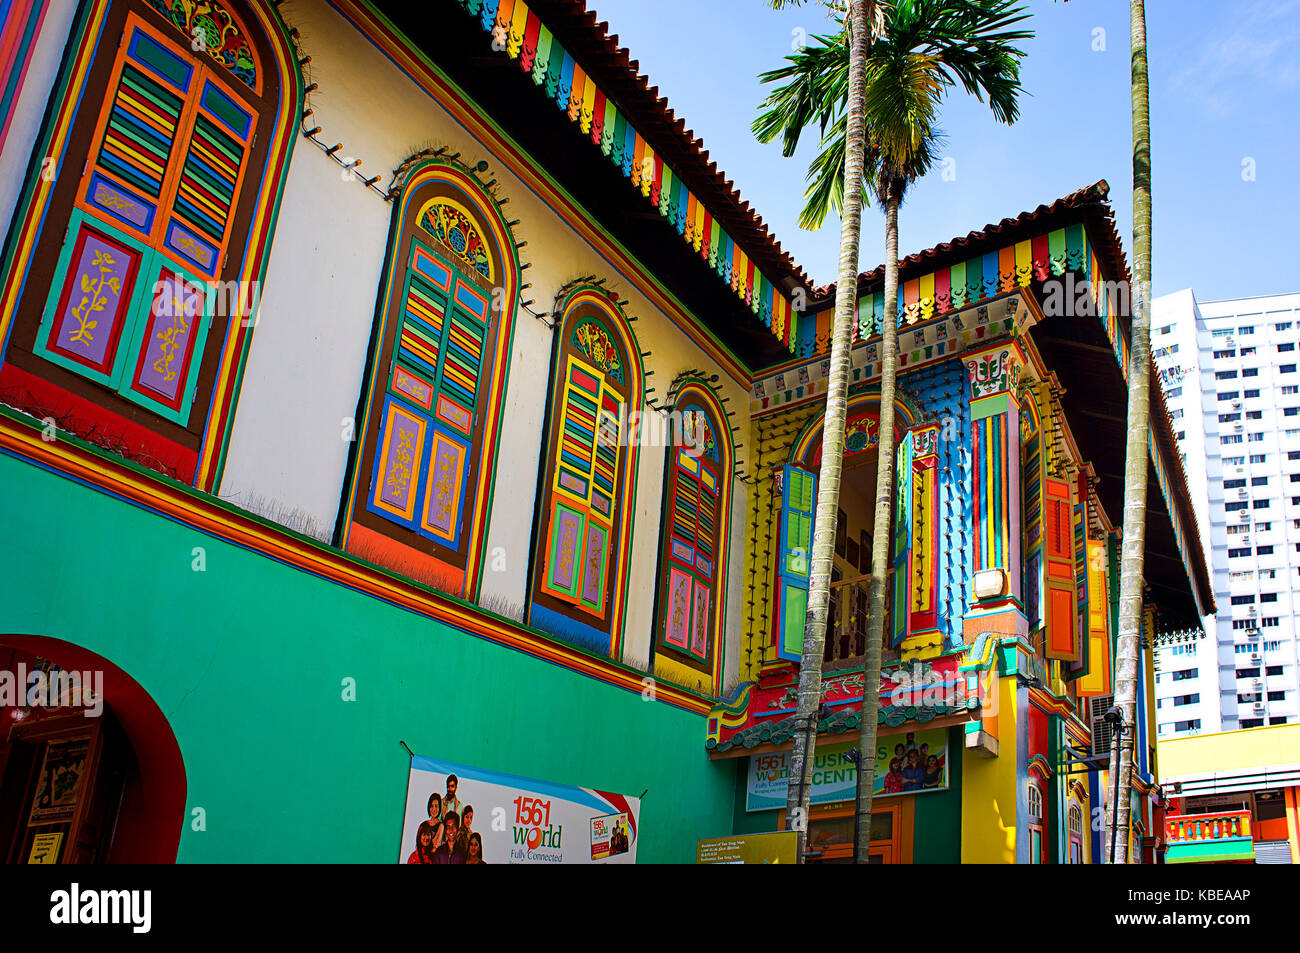 Farbenfrohe Gebäudefassade in Little India, Zentrum der großen indischen Gemeinde der Stadt und einer der lebhaftesten Bezirke. Singapur Stockfoto